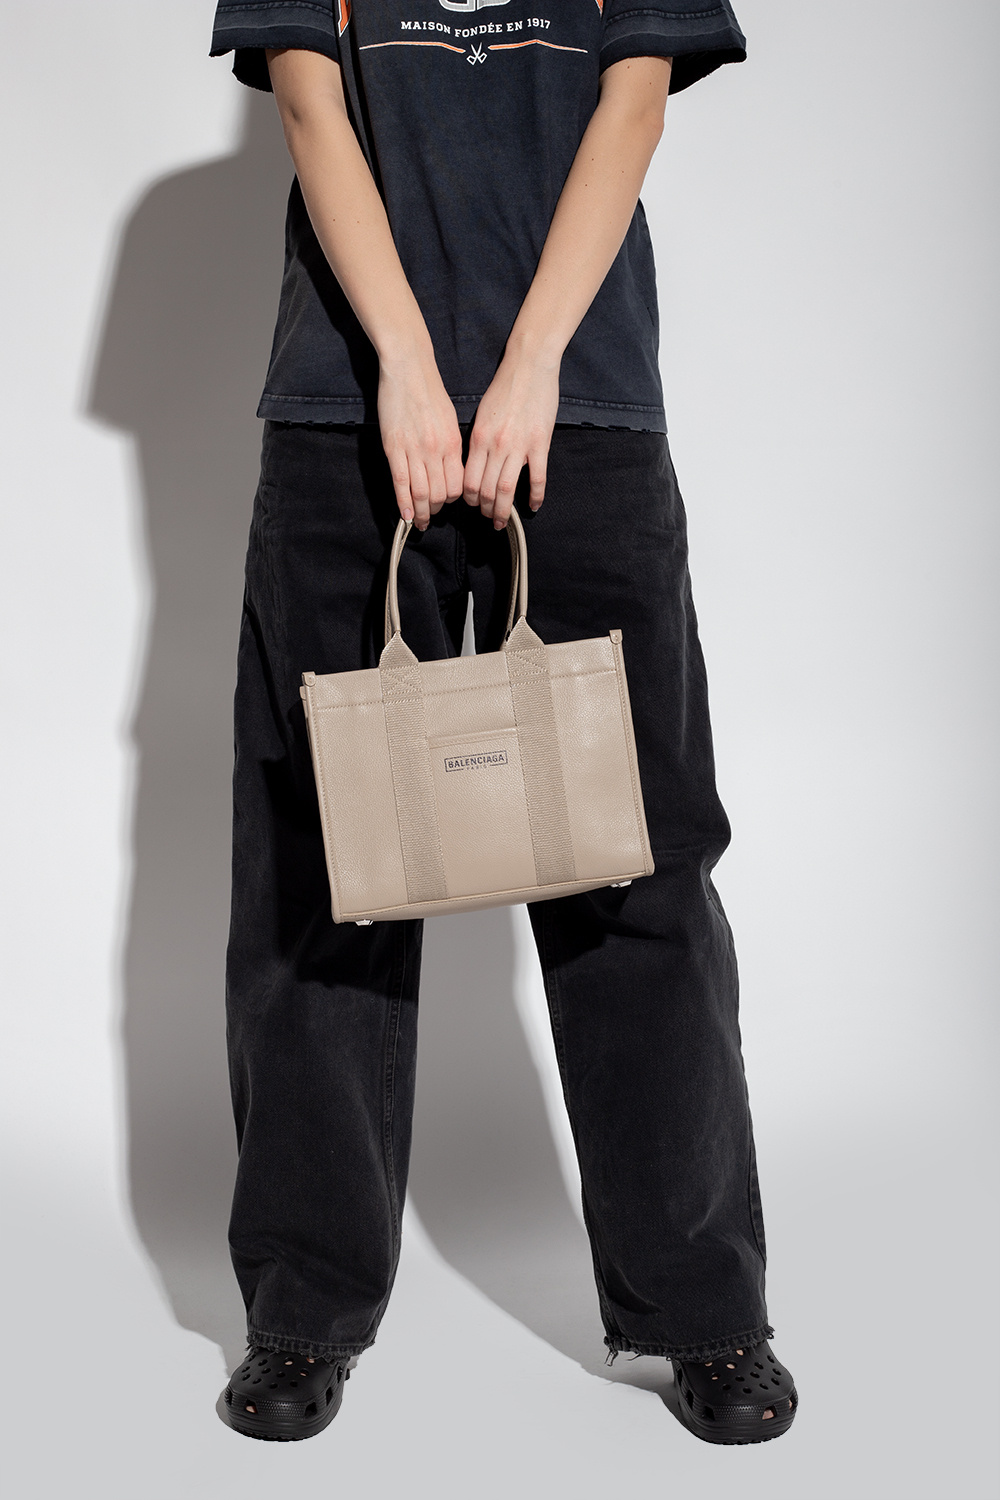 TÚI Balenciaga Hardware Small Tote Bag With StrapBlack